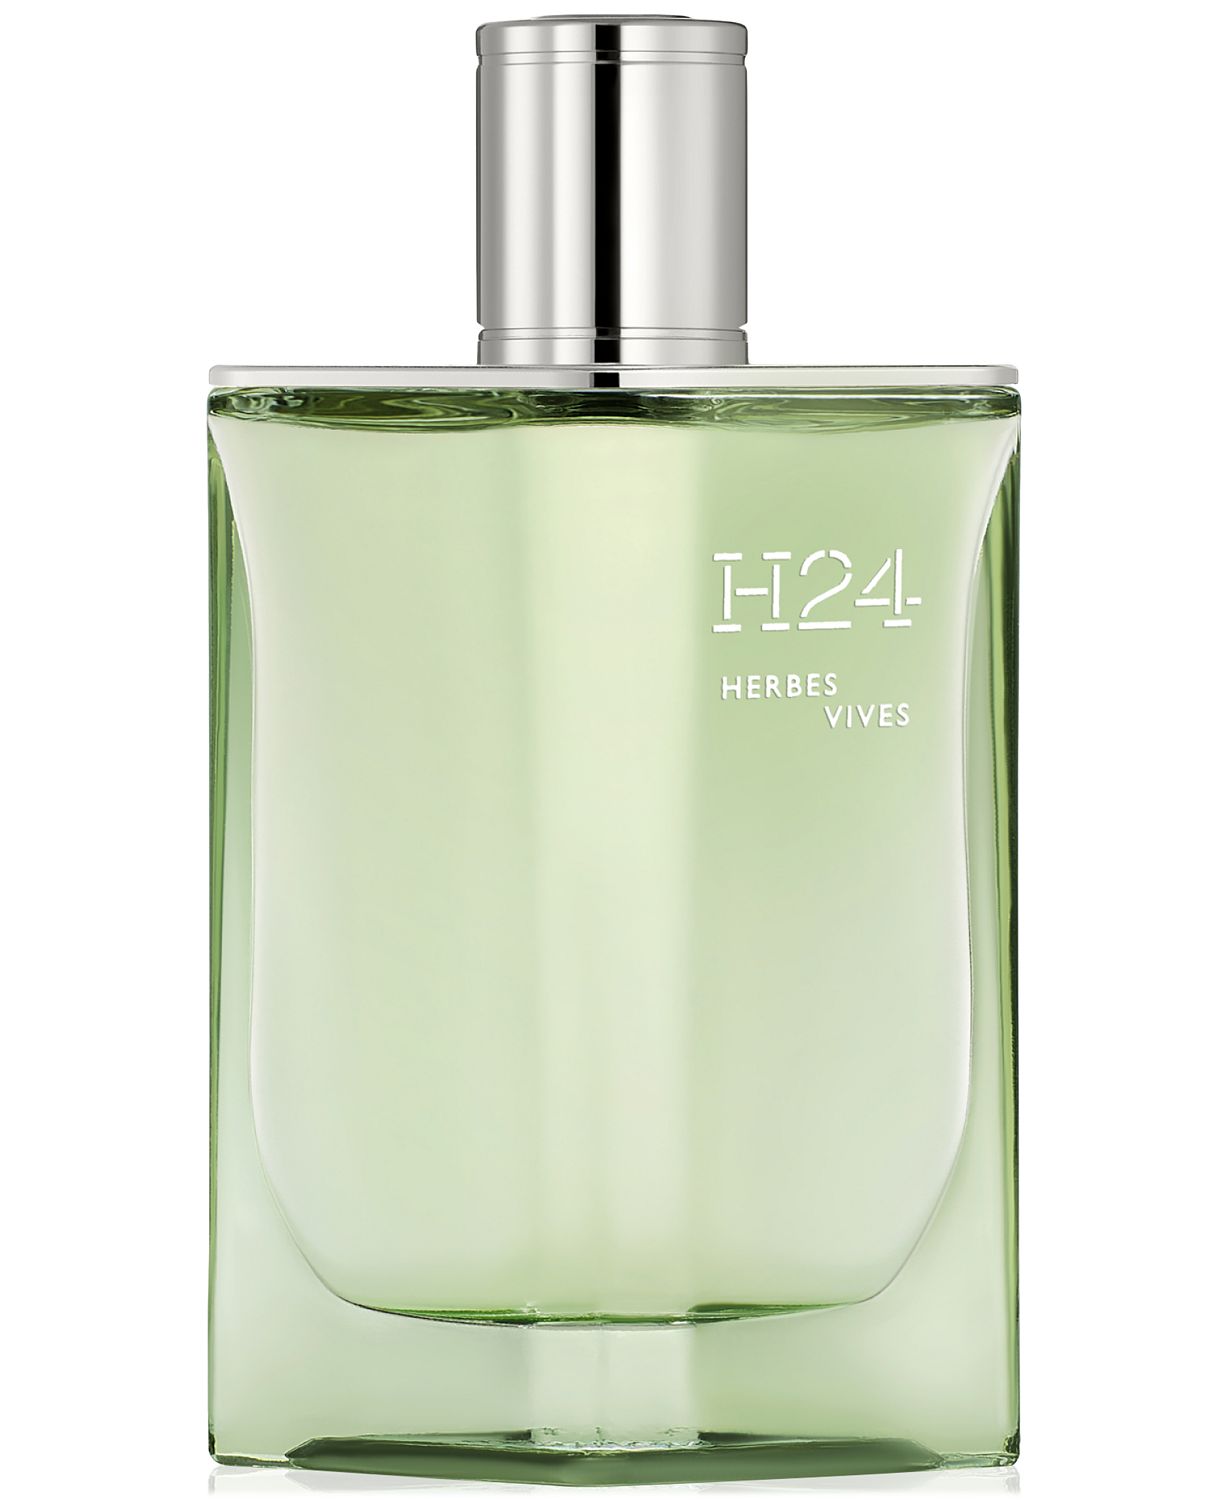  Men's H24 Herbes Vives Eau de Parfum Spray, 3.3 oz.